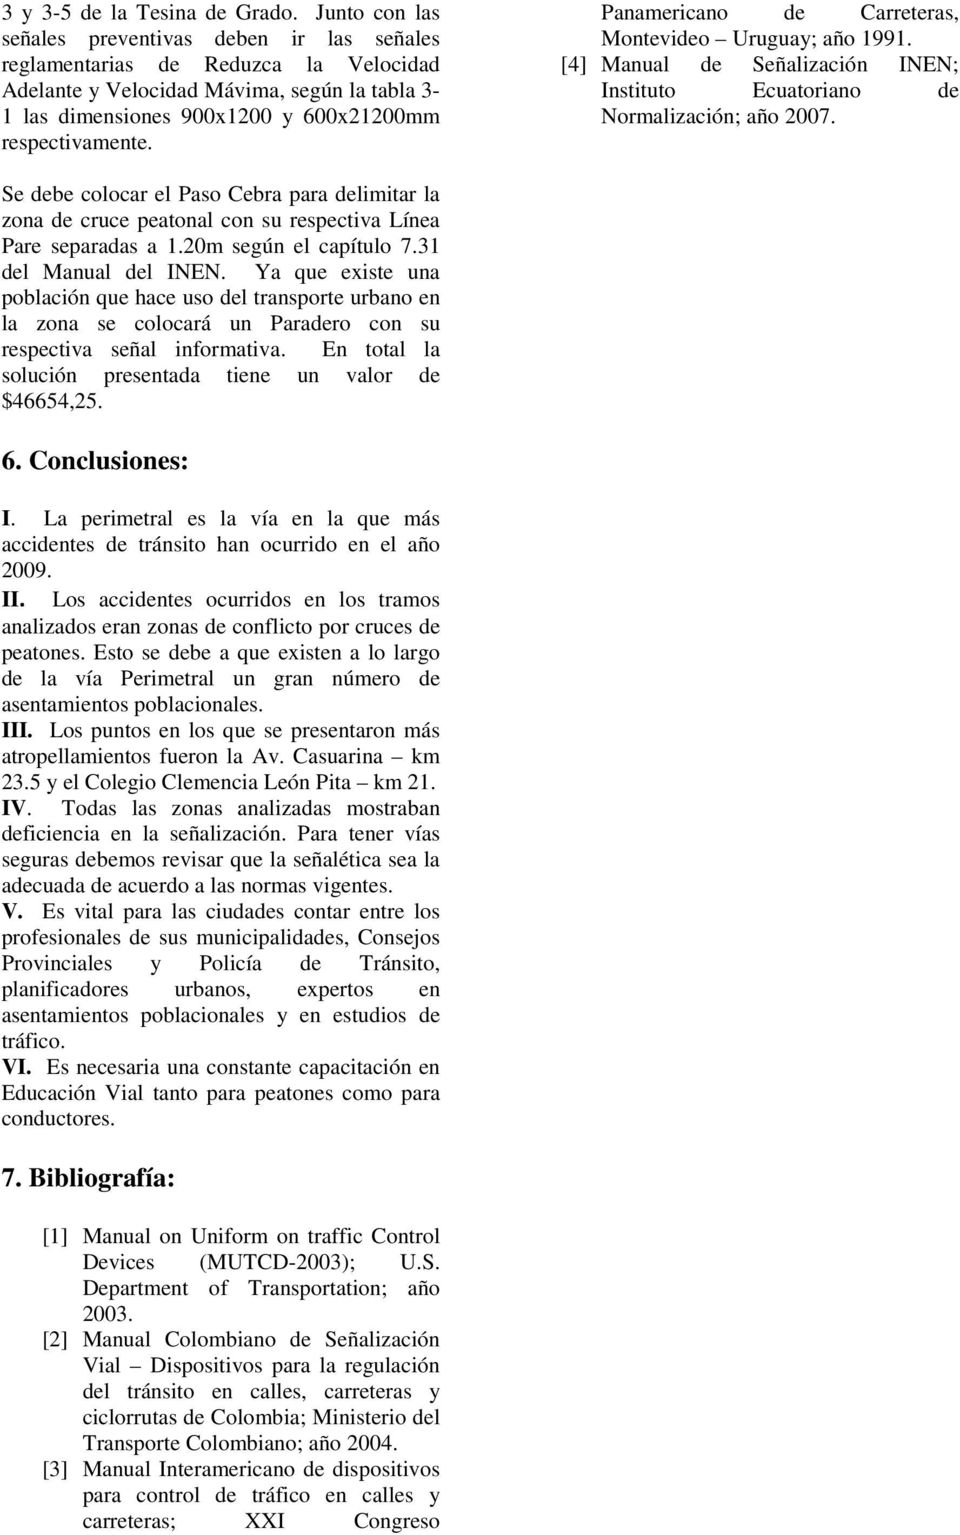 Panamericano de Carreteras, Montevideo Uruguay; año 1991. [4] Manual de Señalización INEN; Instituto Ecuatoriano de Normalización; año 2007.